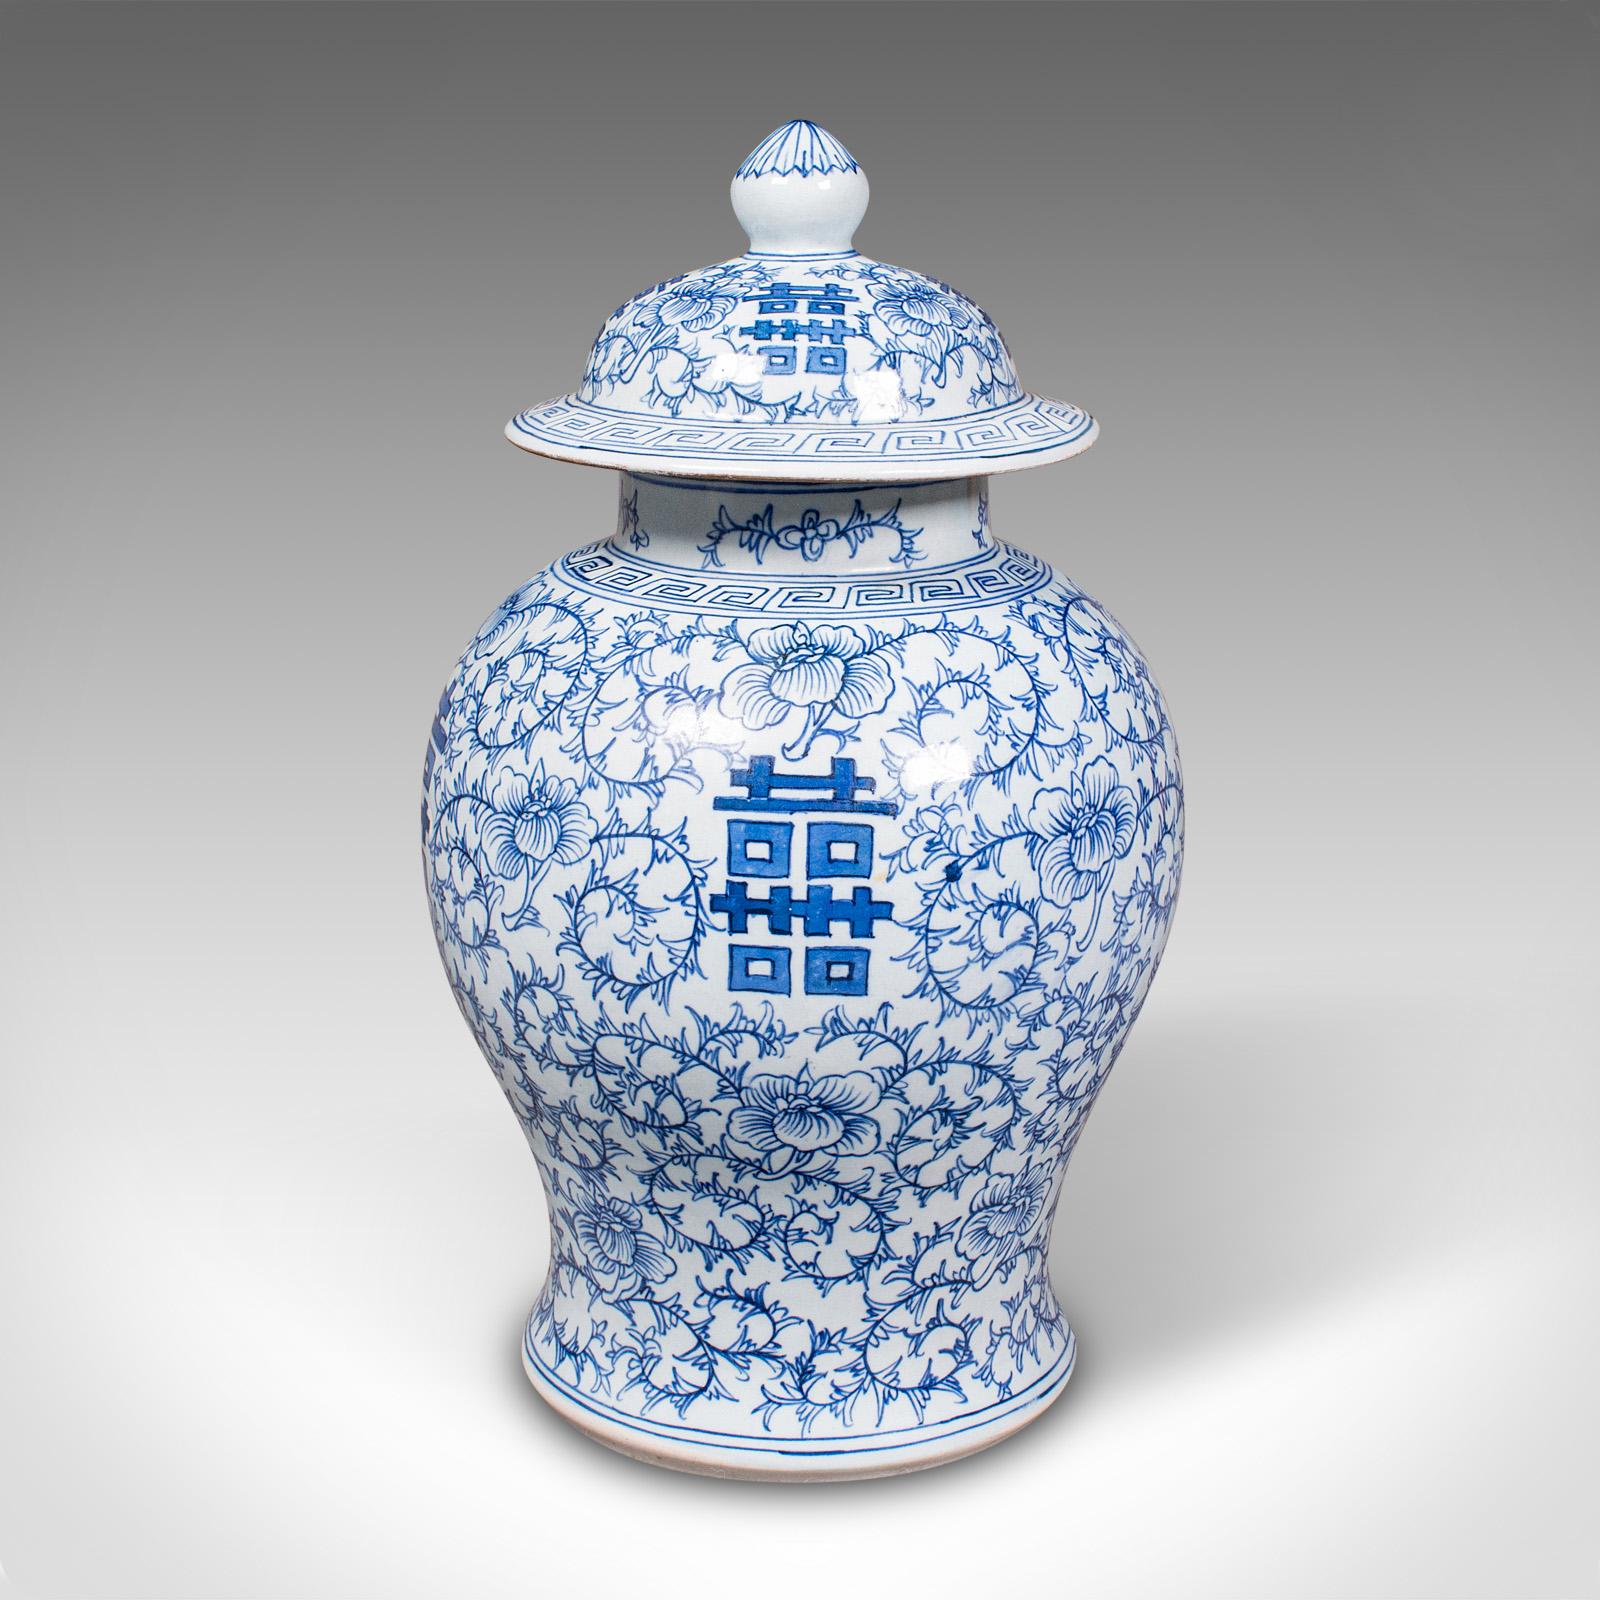 Vintage Decorative Flower Vase, Chinese, Ceramic, Urn, Spice Jar, Art Deco, 1930 For Sale 2